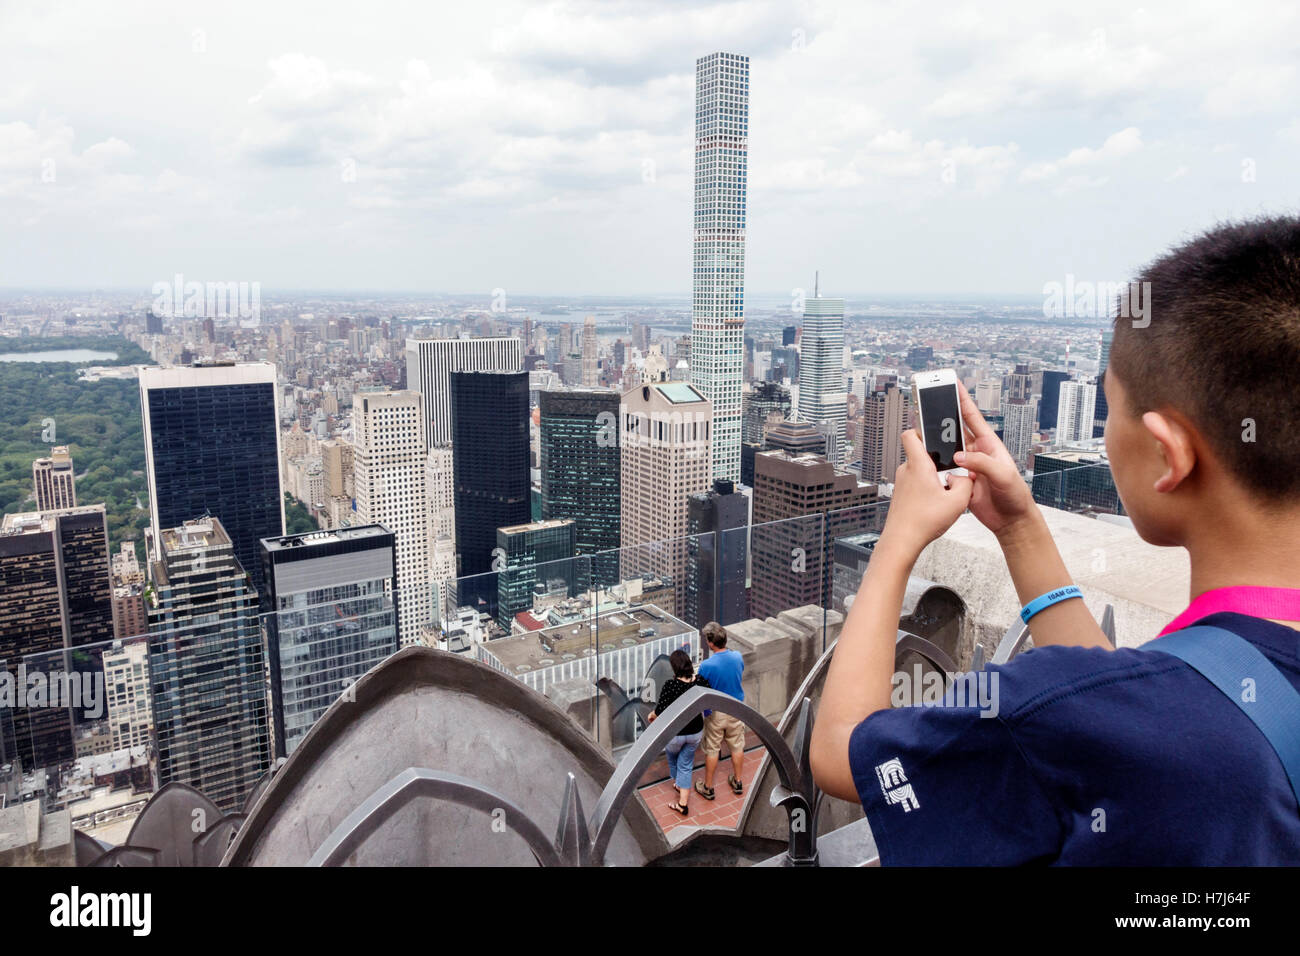 Ciudad de Nueva York, NY NYC, Manhattan, Midtown, 30 Rockefeller Center, edificio GE, Top of the Rock, plataforma de observación, horizonte, rascacielos, immig asiático asiático Foto de stock